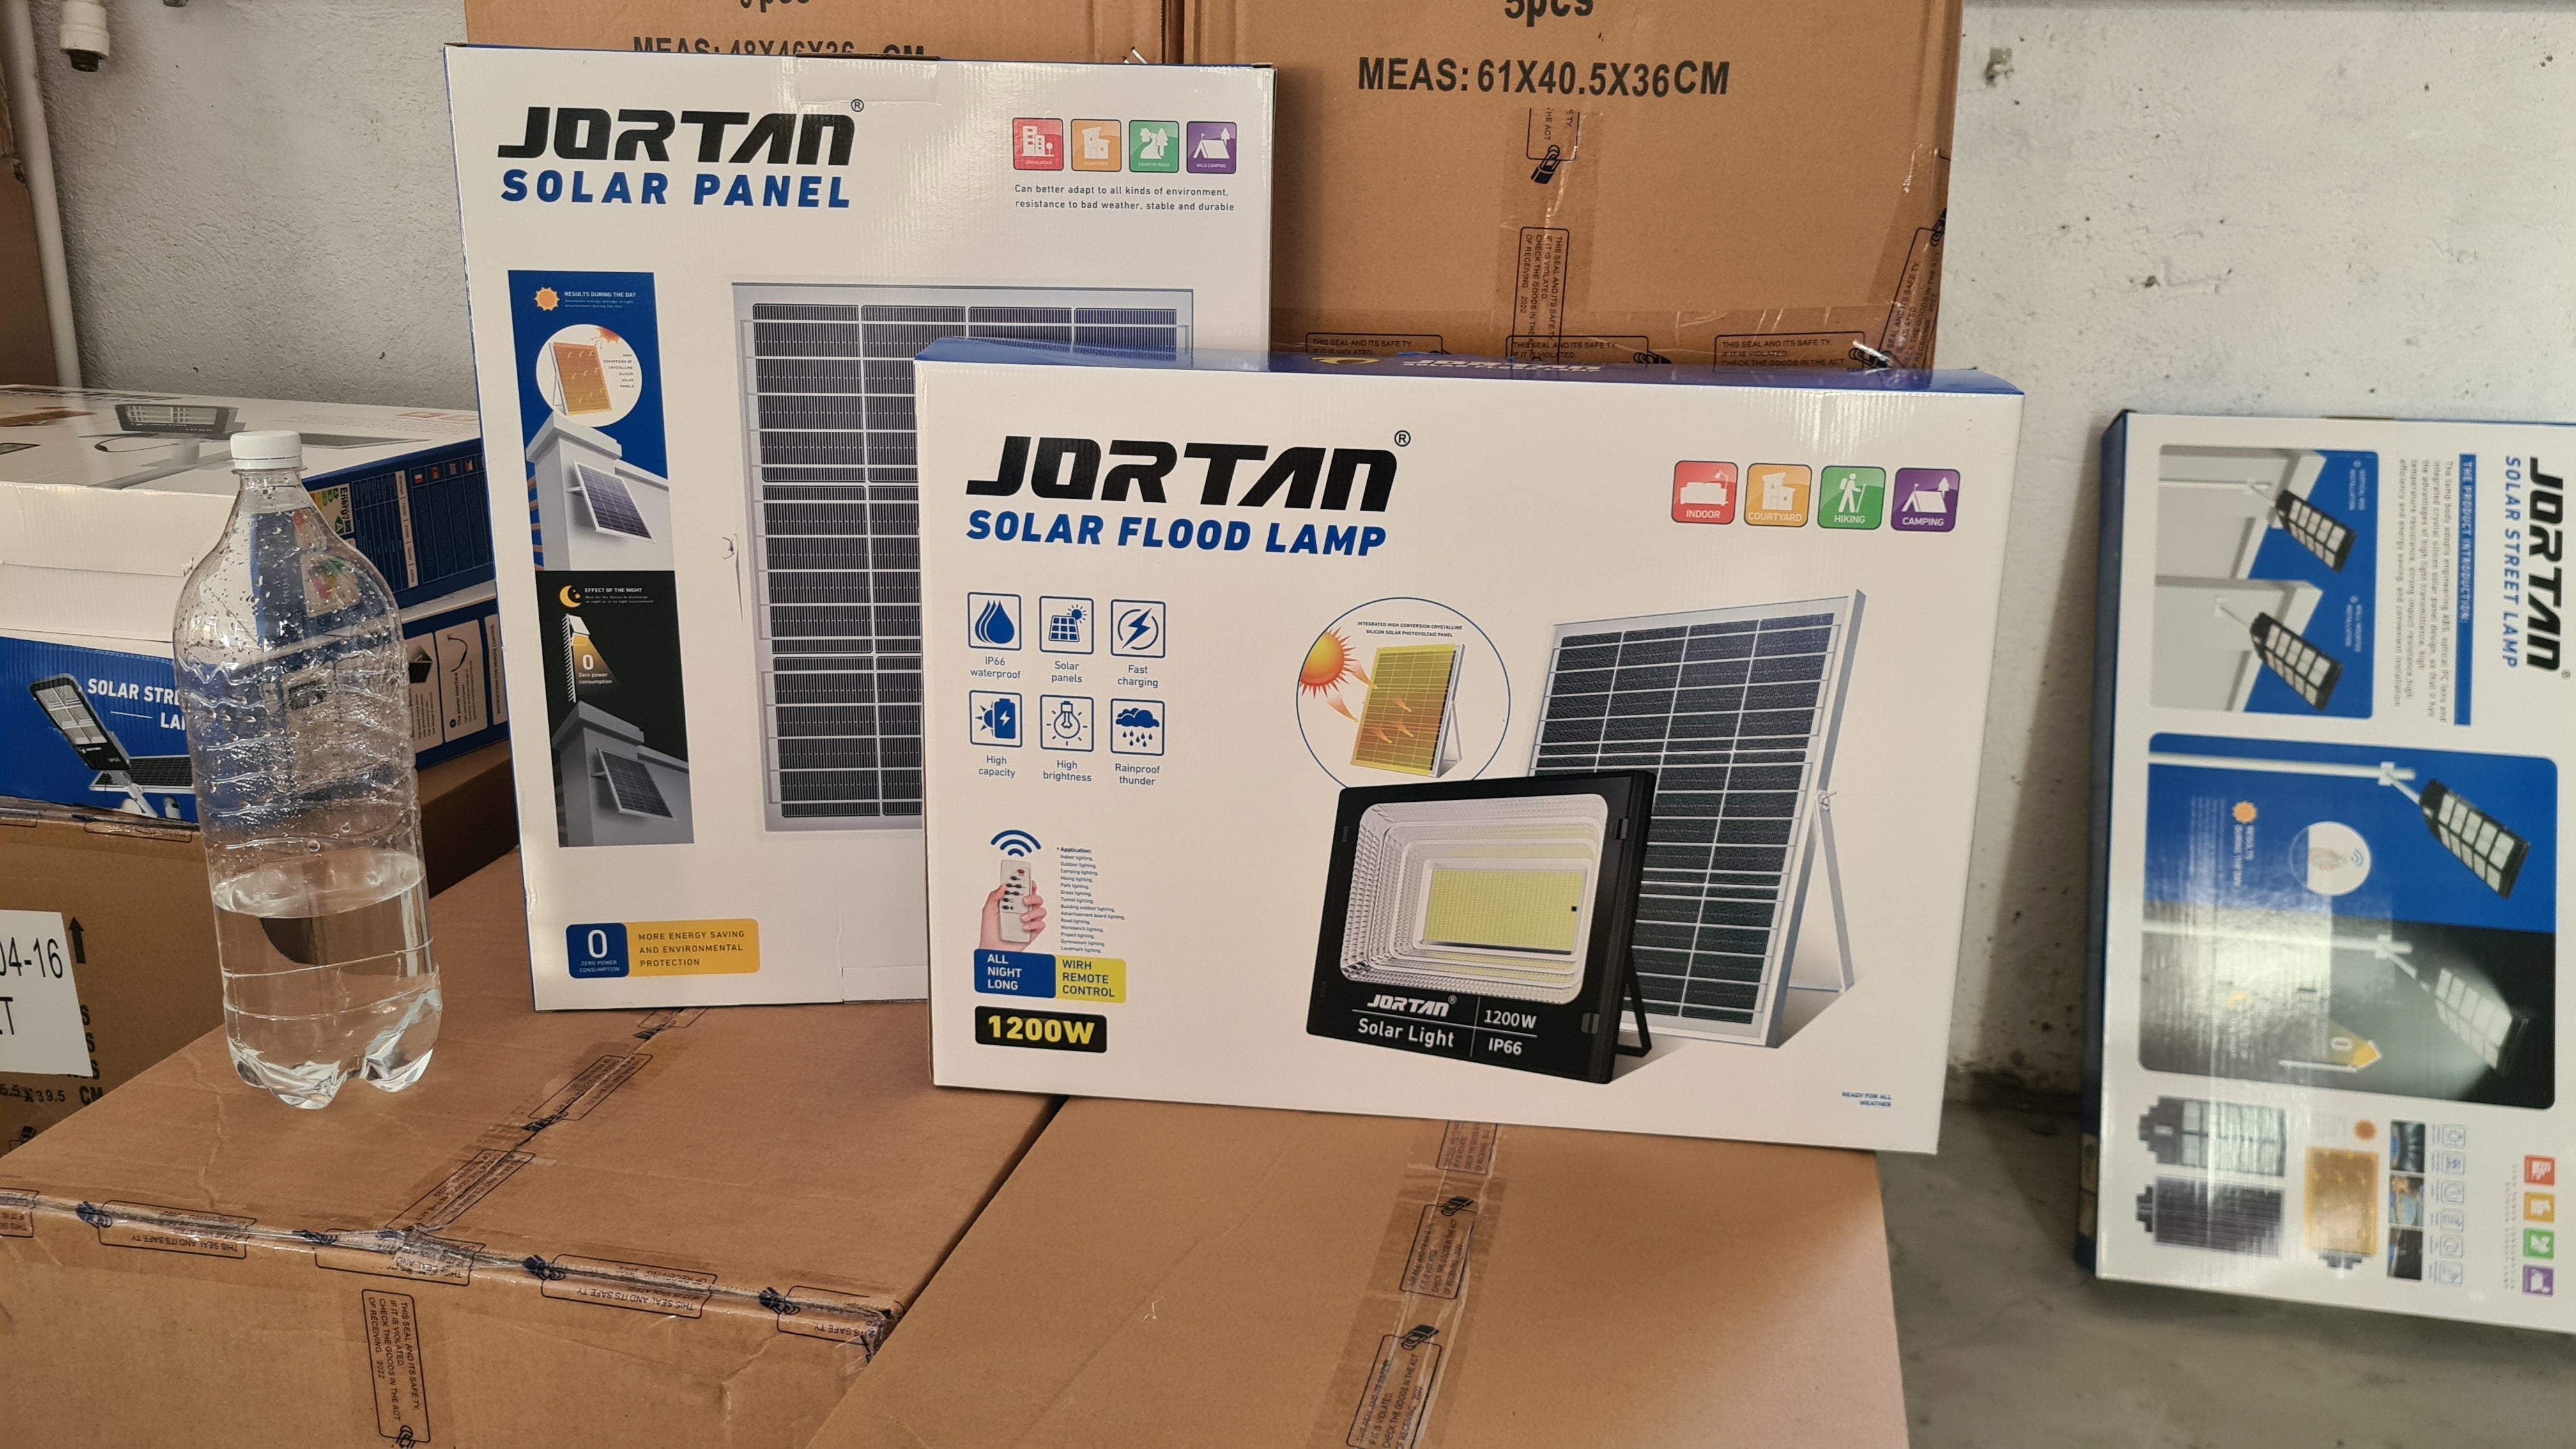 Proiector Solar Jortan  1200W/600W/400W/200W/100W, Lampa Incarcare Solara +Panou Solar